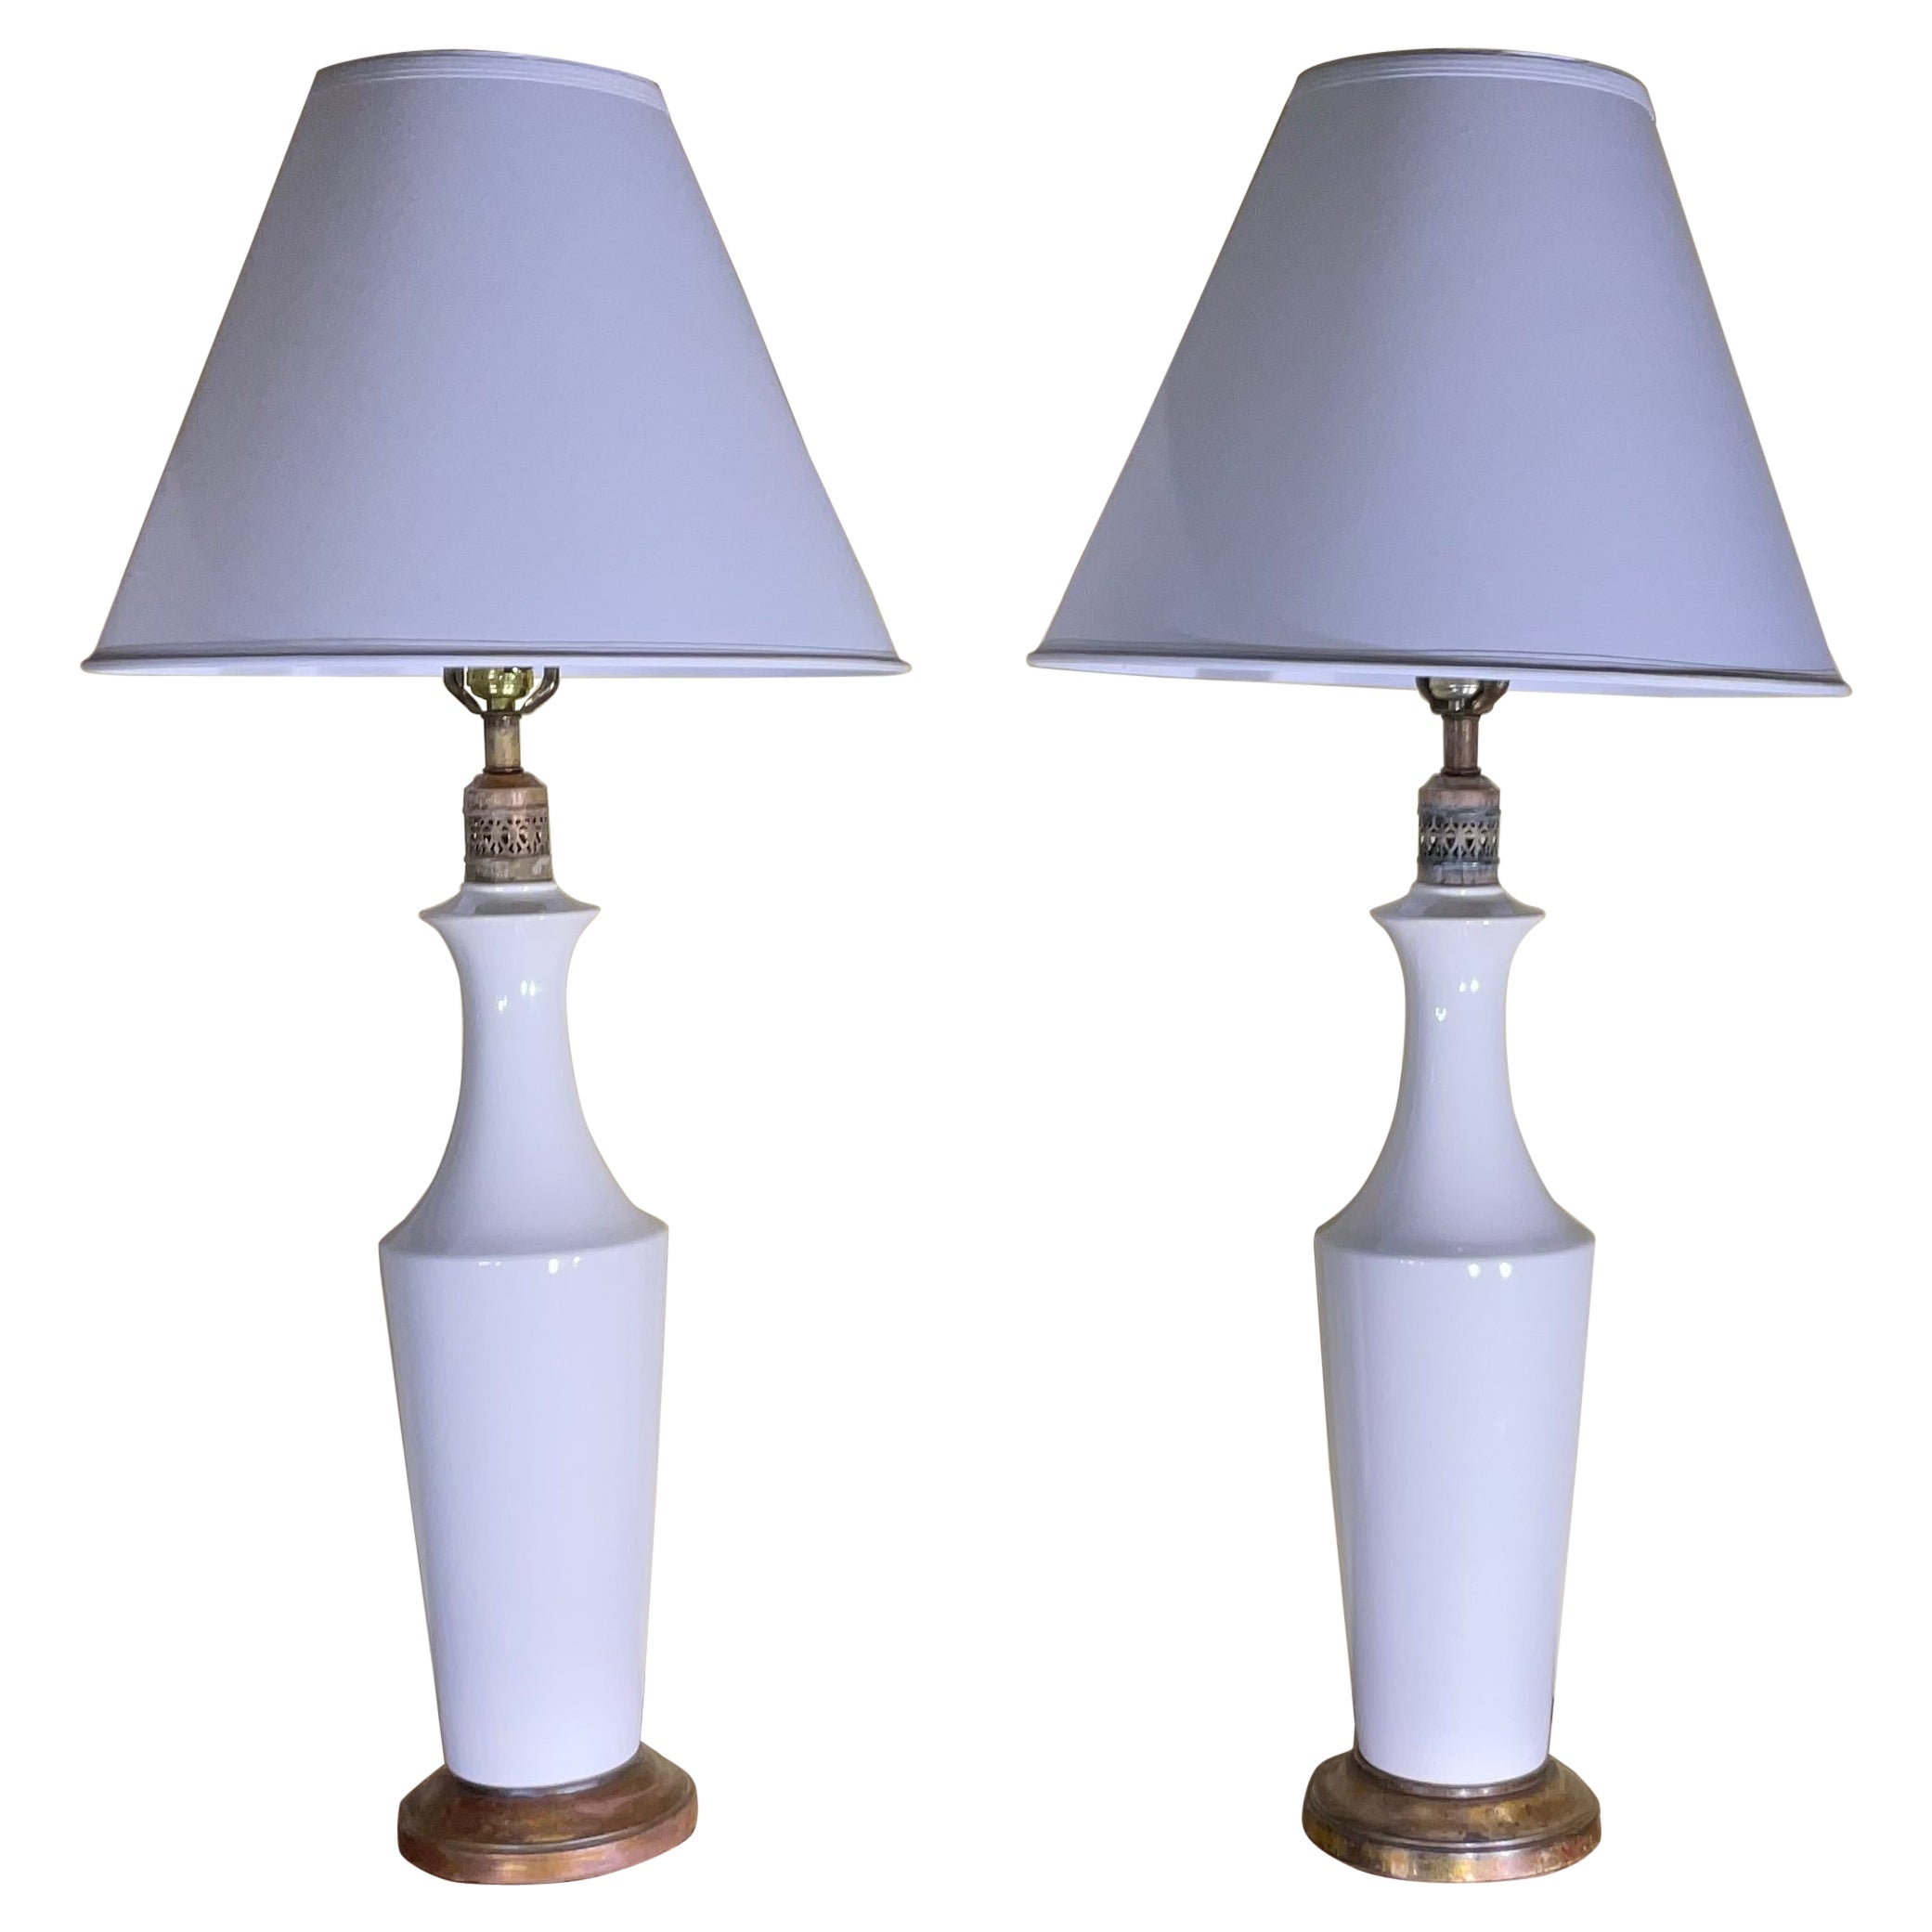 Pair of White Ceramic Table Lamp